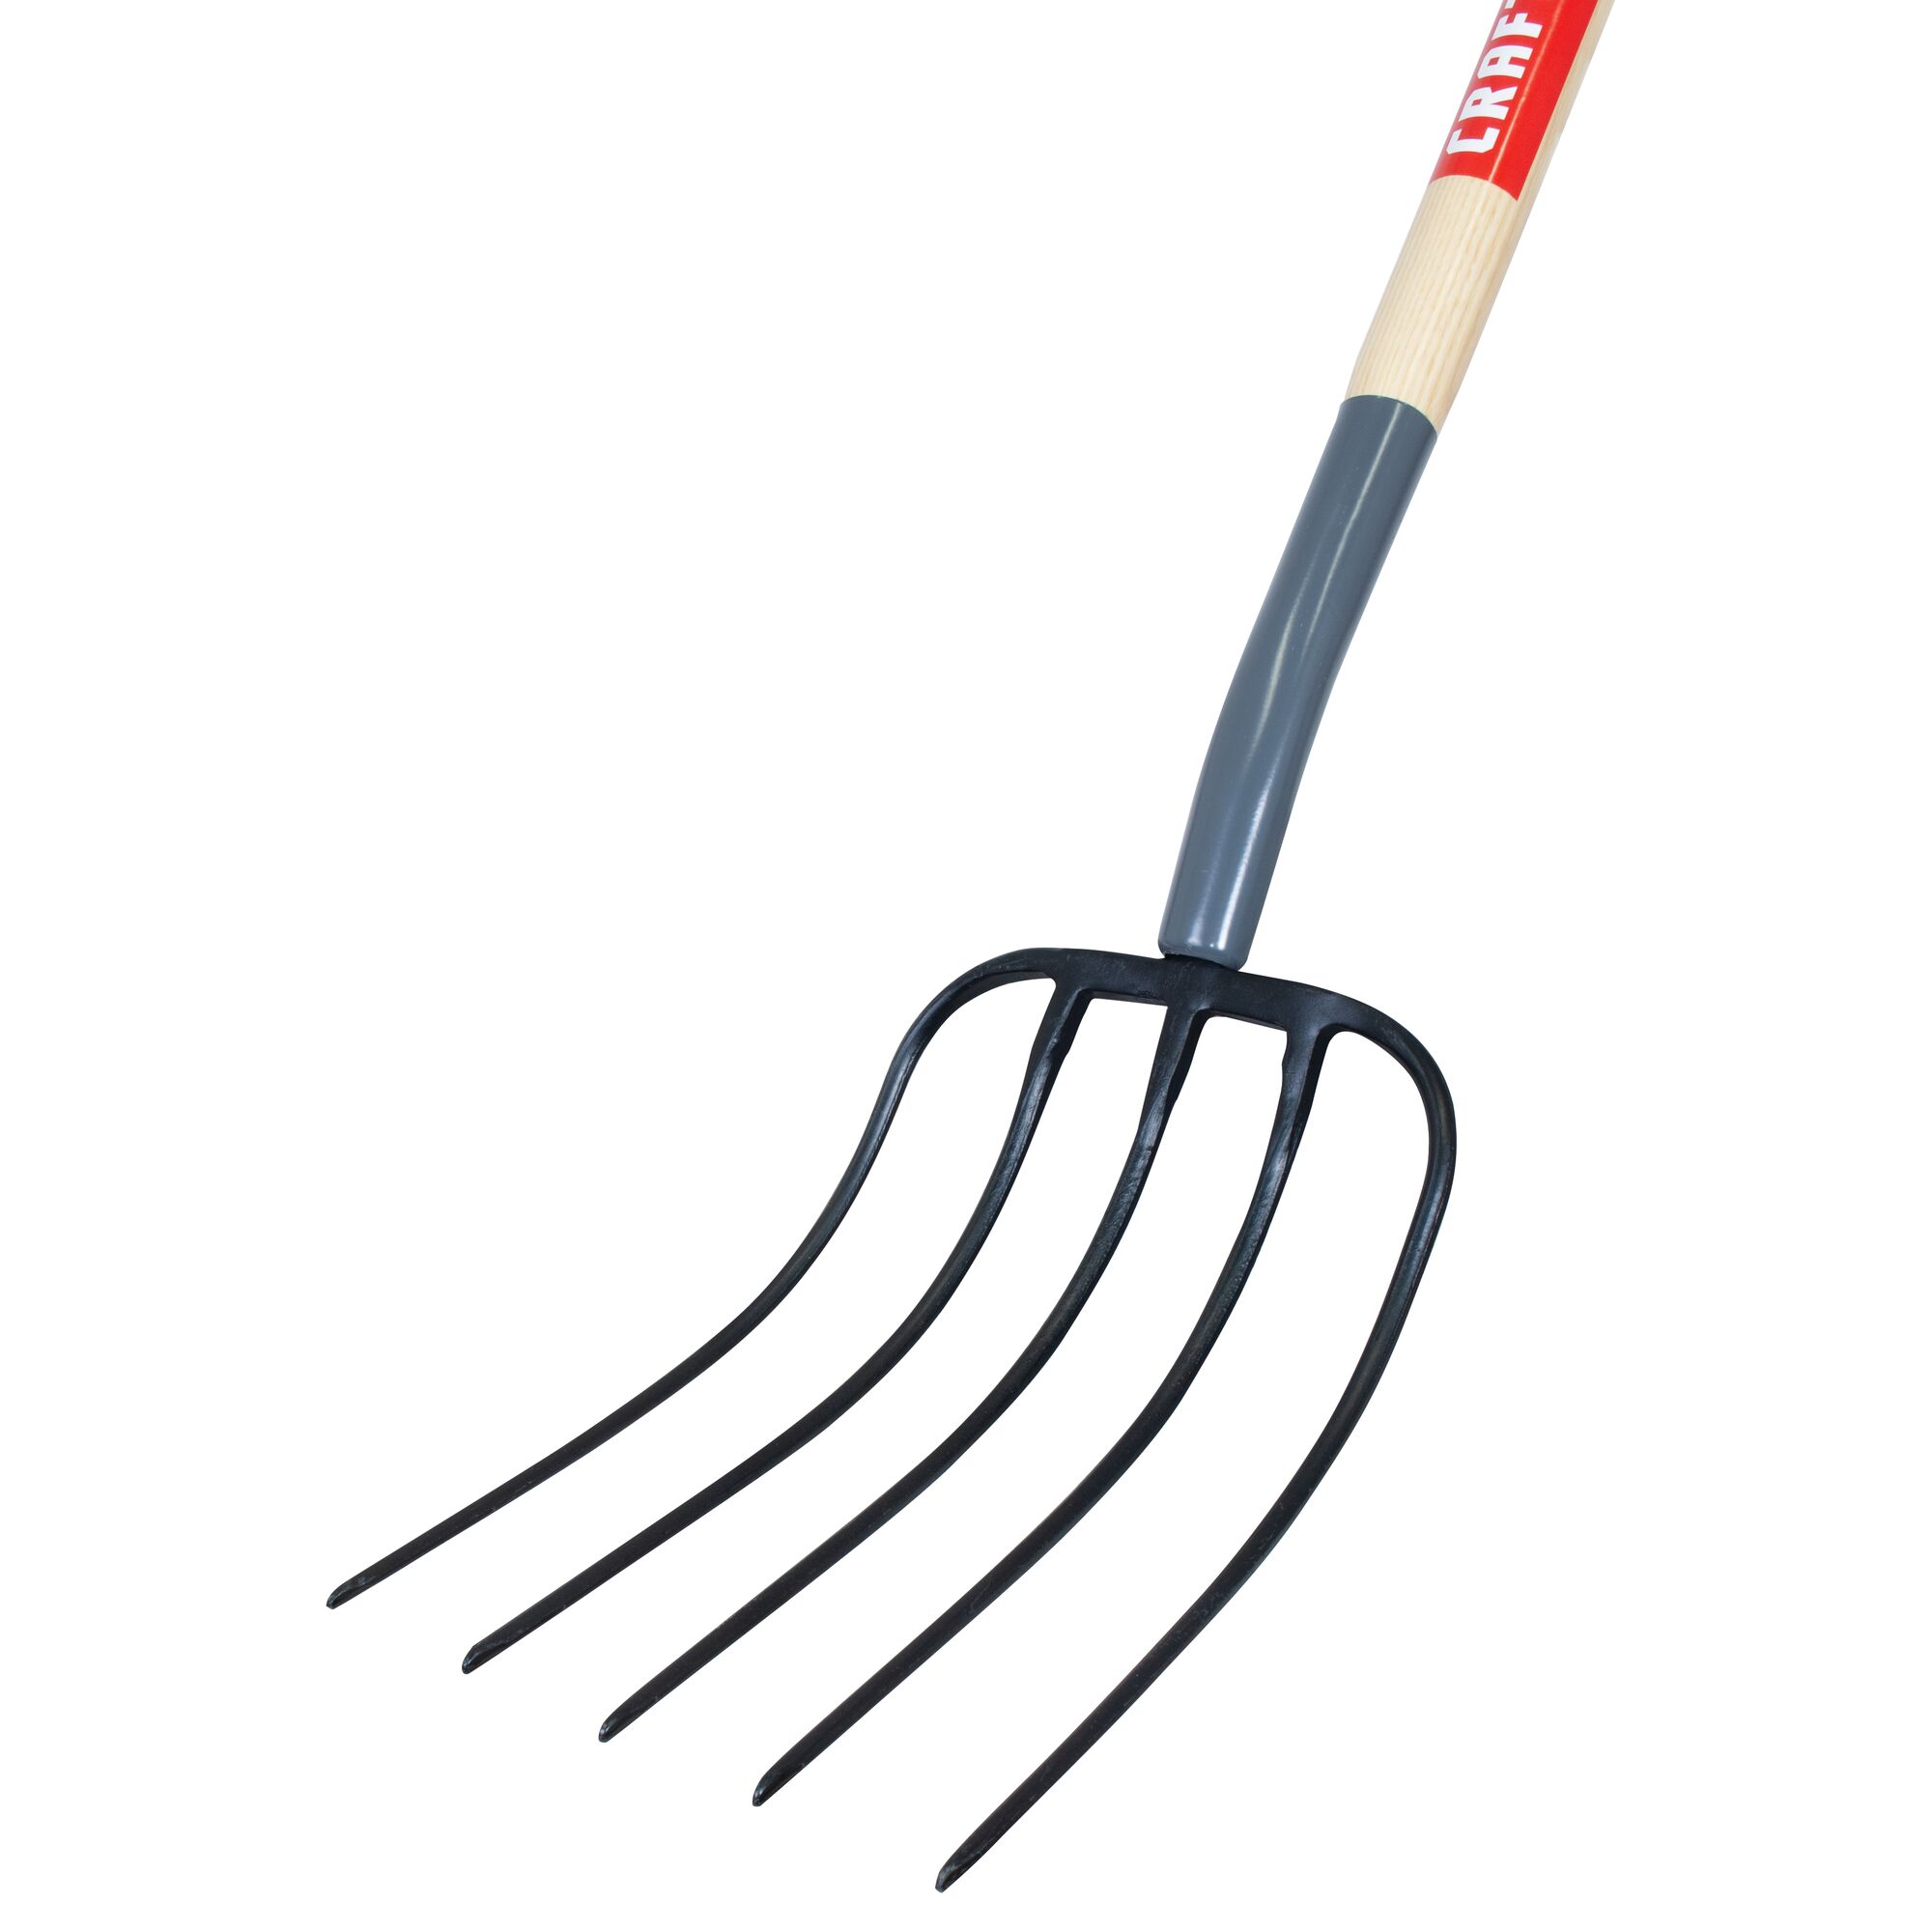 Left profile of wood handle manure fork.